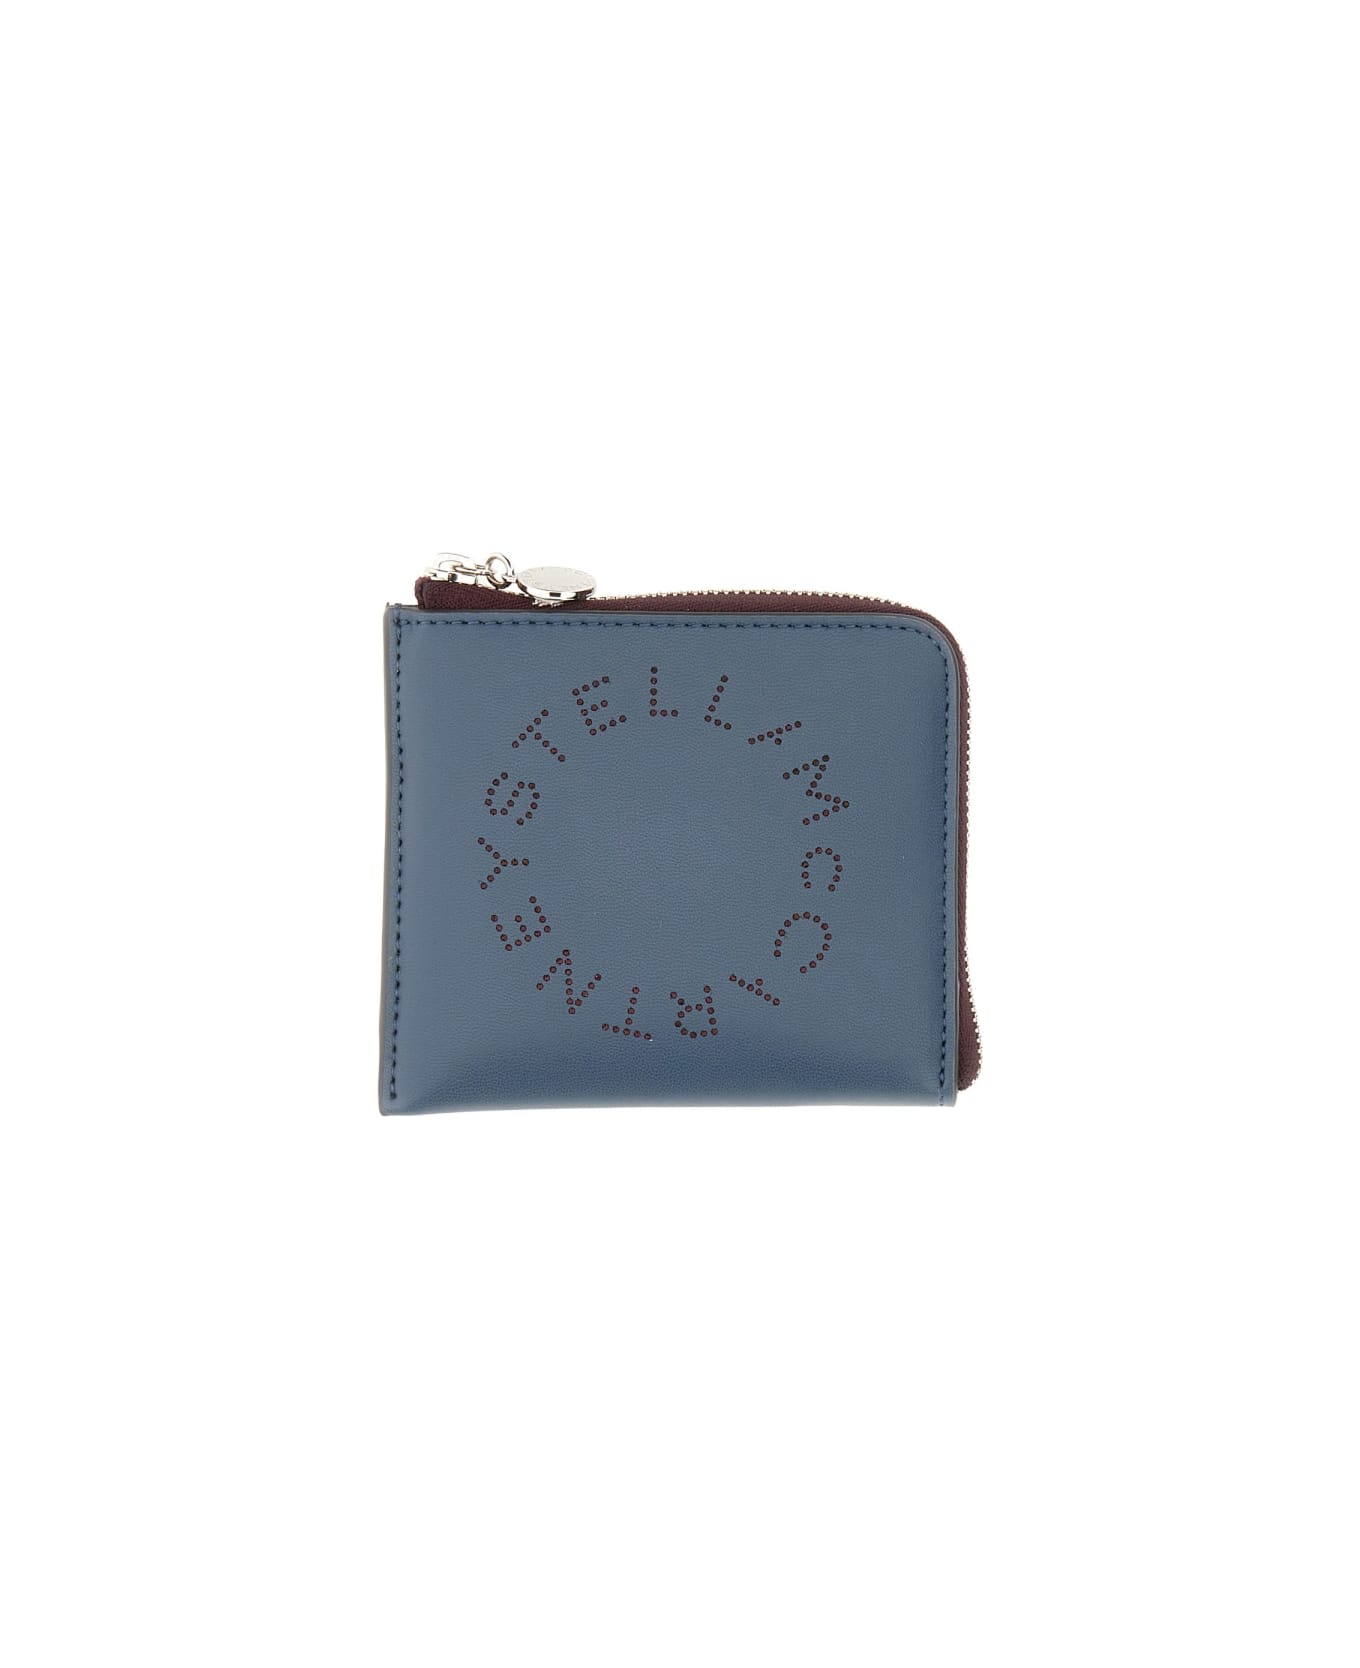 Stella McCartney Zipped Wallet - BLUE